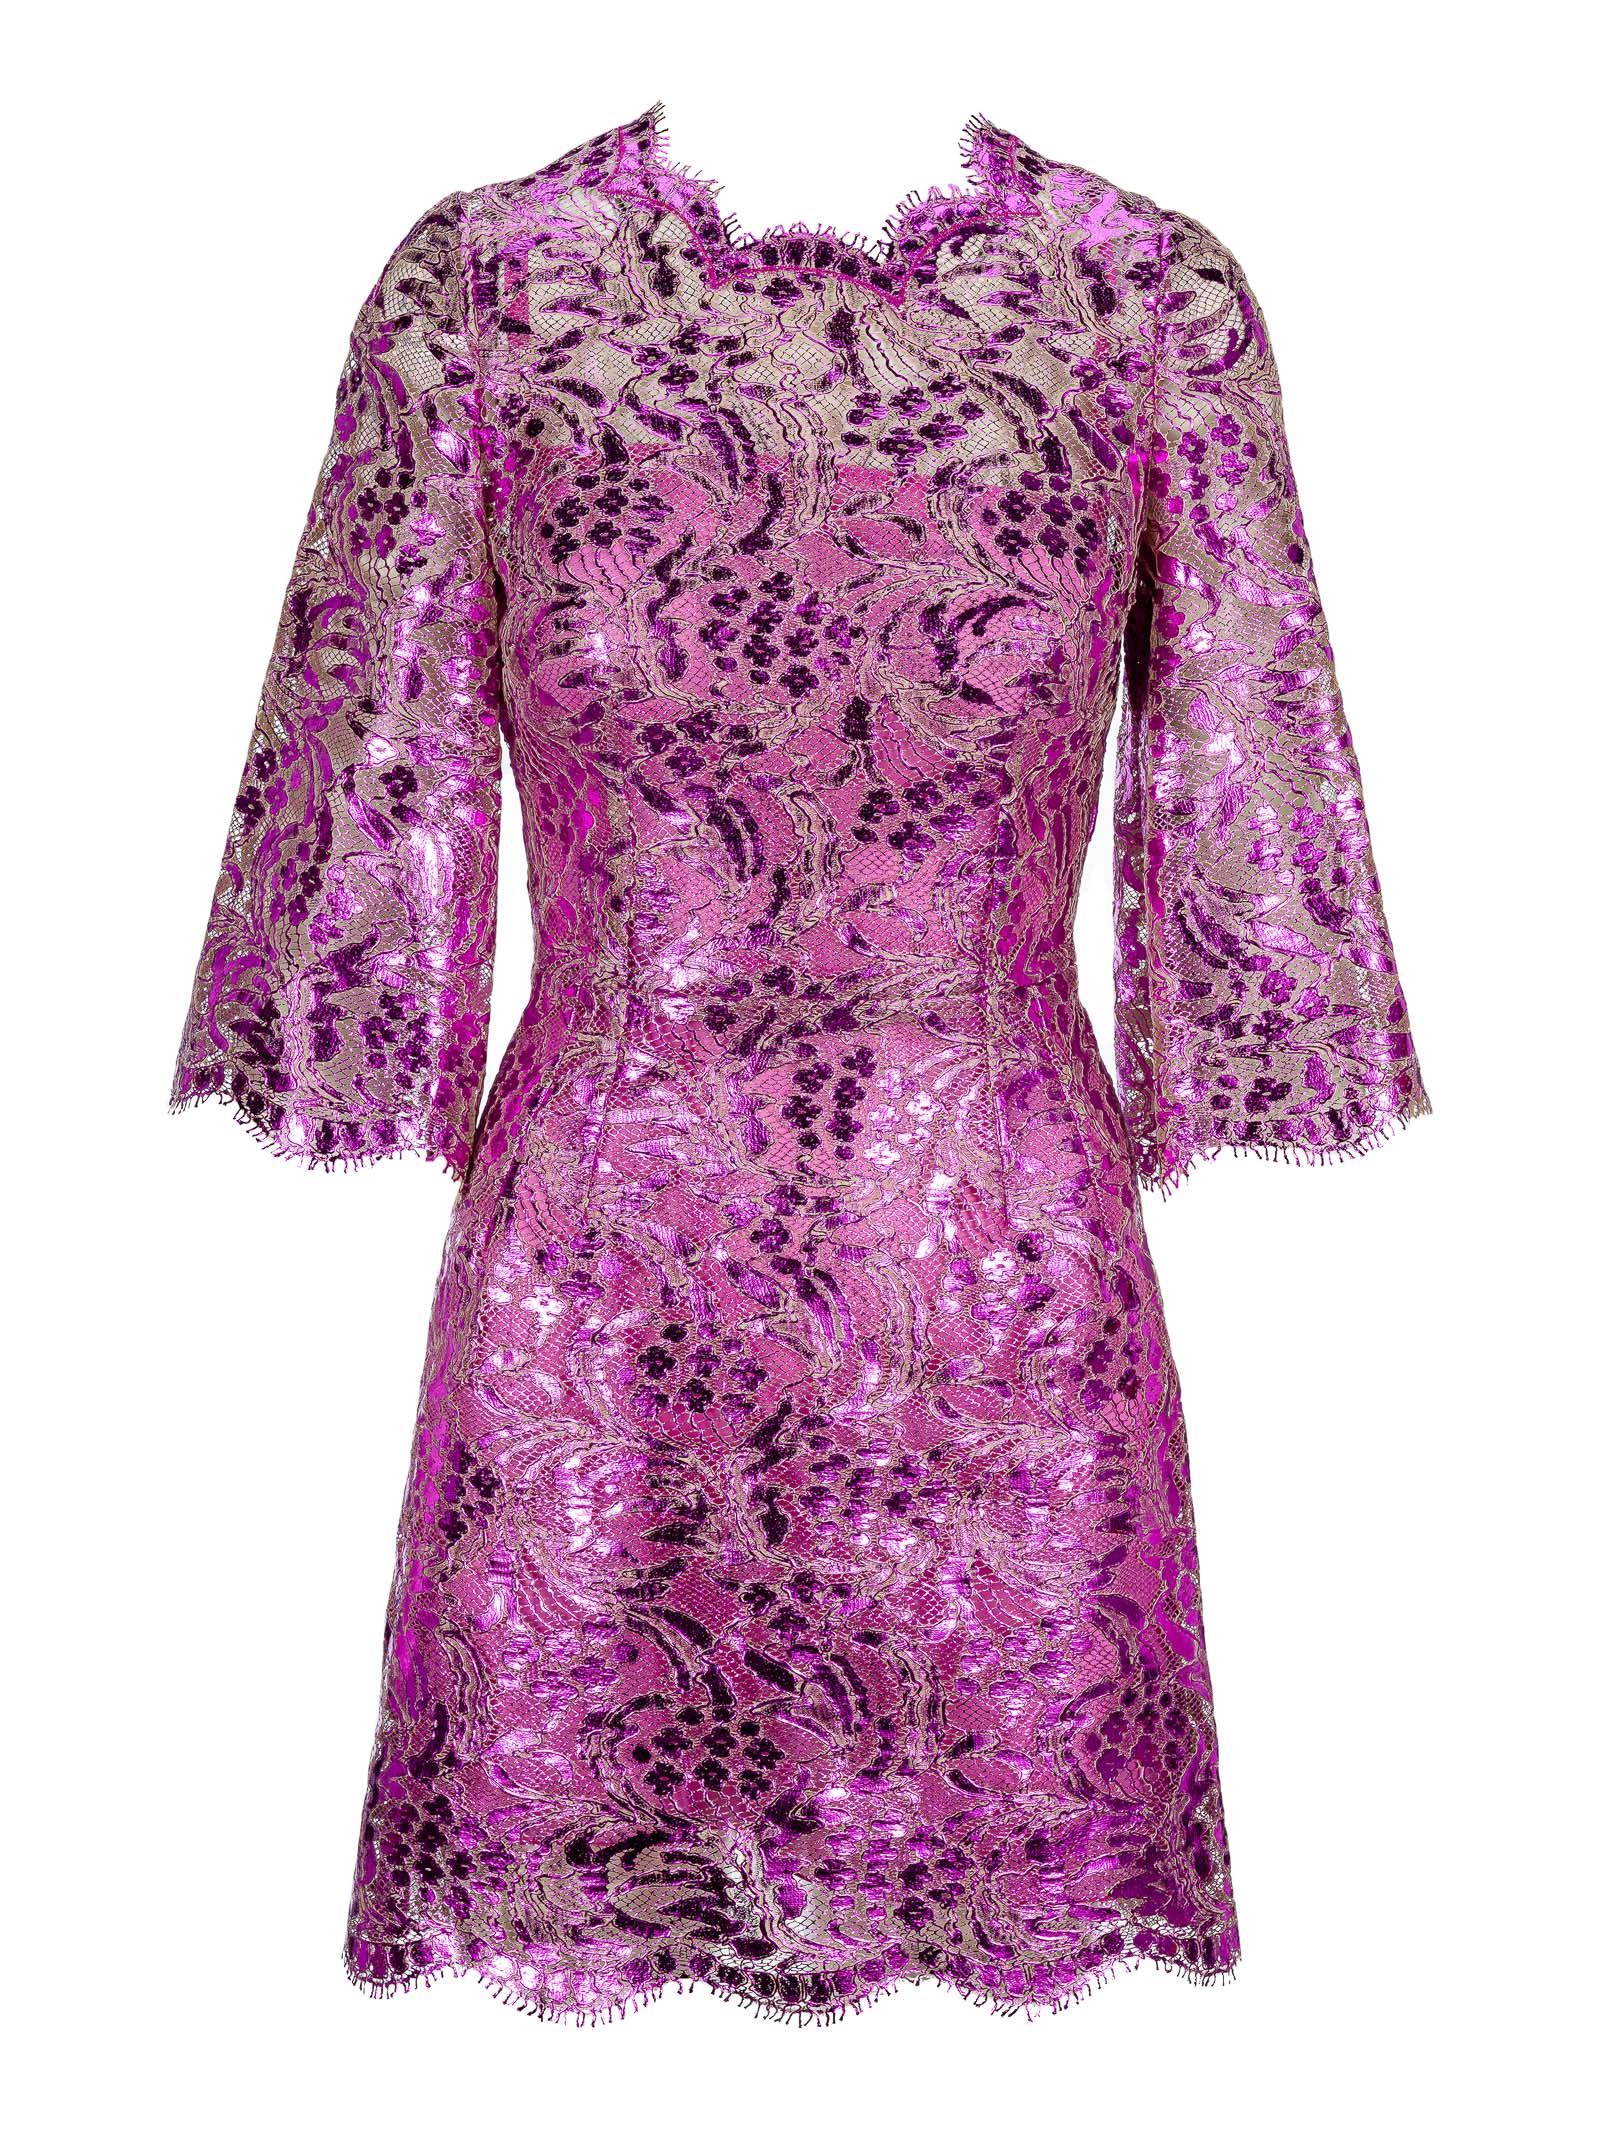 Dolce & Gabbana Dolce & gabbana Short Laminated Lace Dress